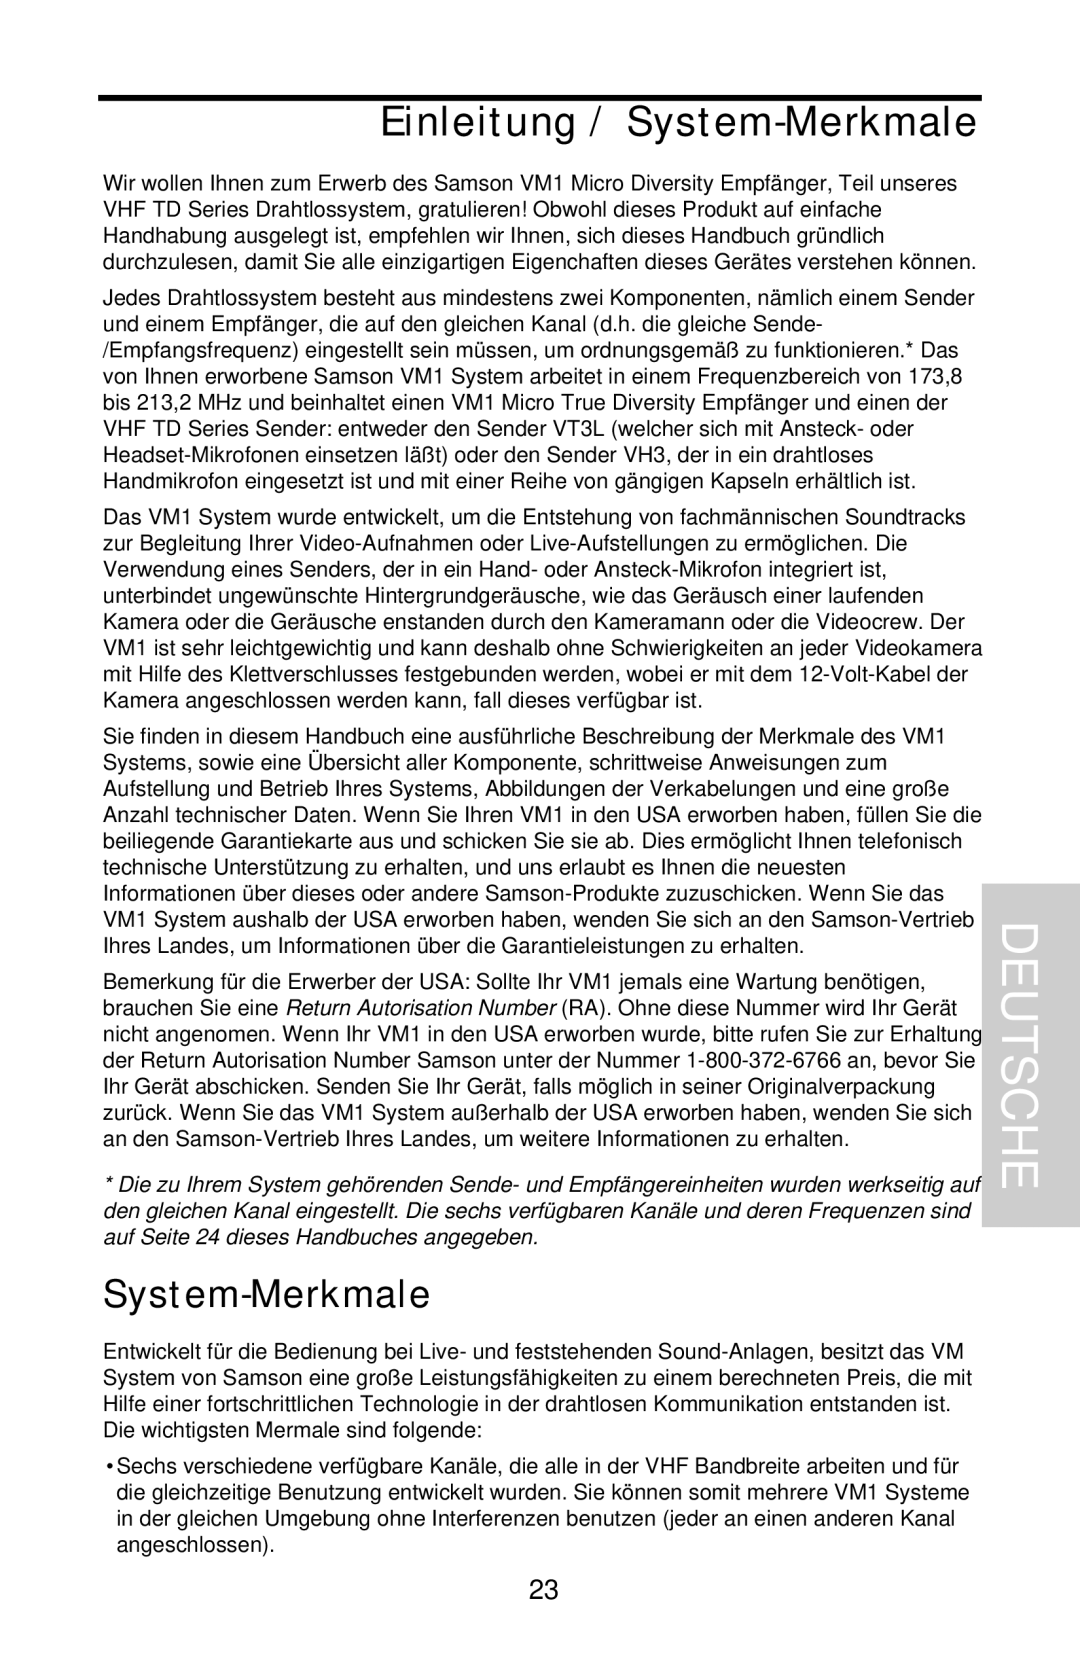 Samson VHF Micro TRUE DIVERSITY WIRELESS owner manual Deutsche, Einleitung / System-Merkmale 